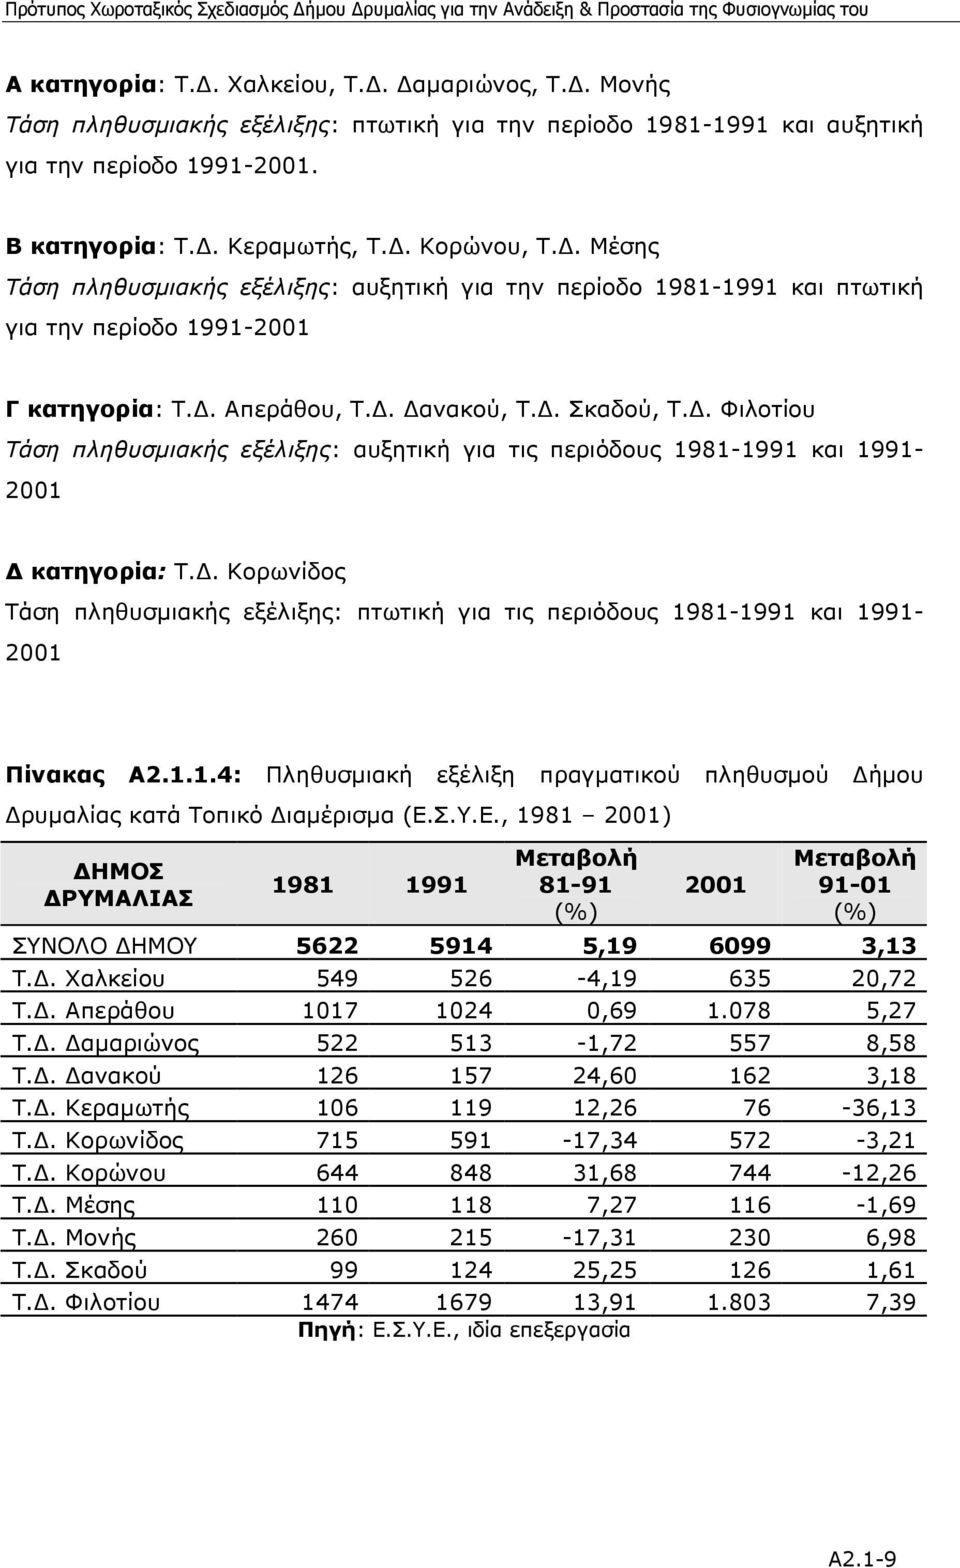 . Φιλοτίου Τάση πληθυσµιακής εξέλιξης: αυξητική για τις περιόδους 1981-1991 και 1991-2001 κατηγορία: Τ.